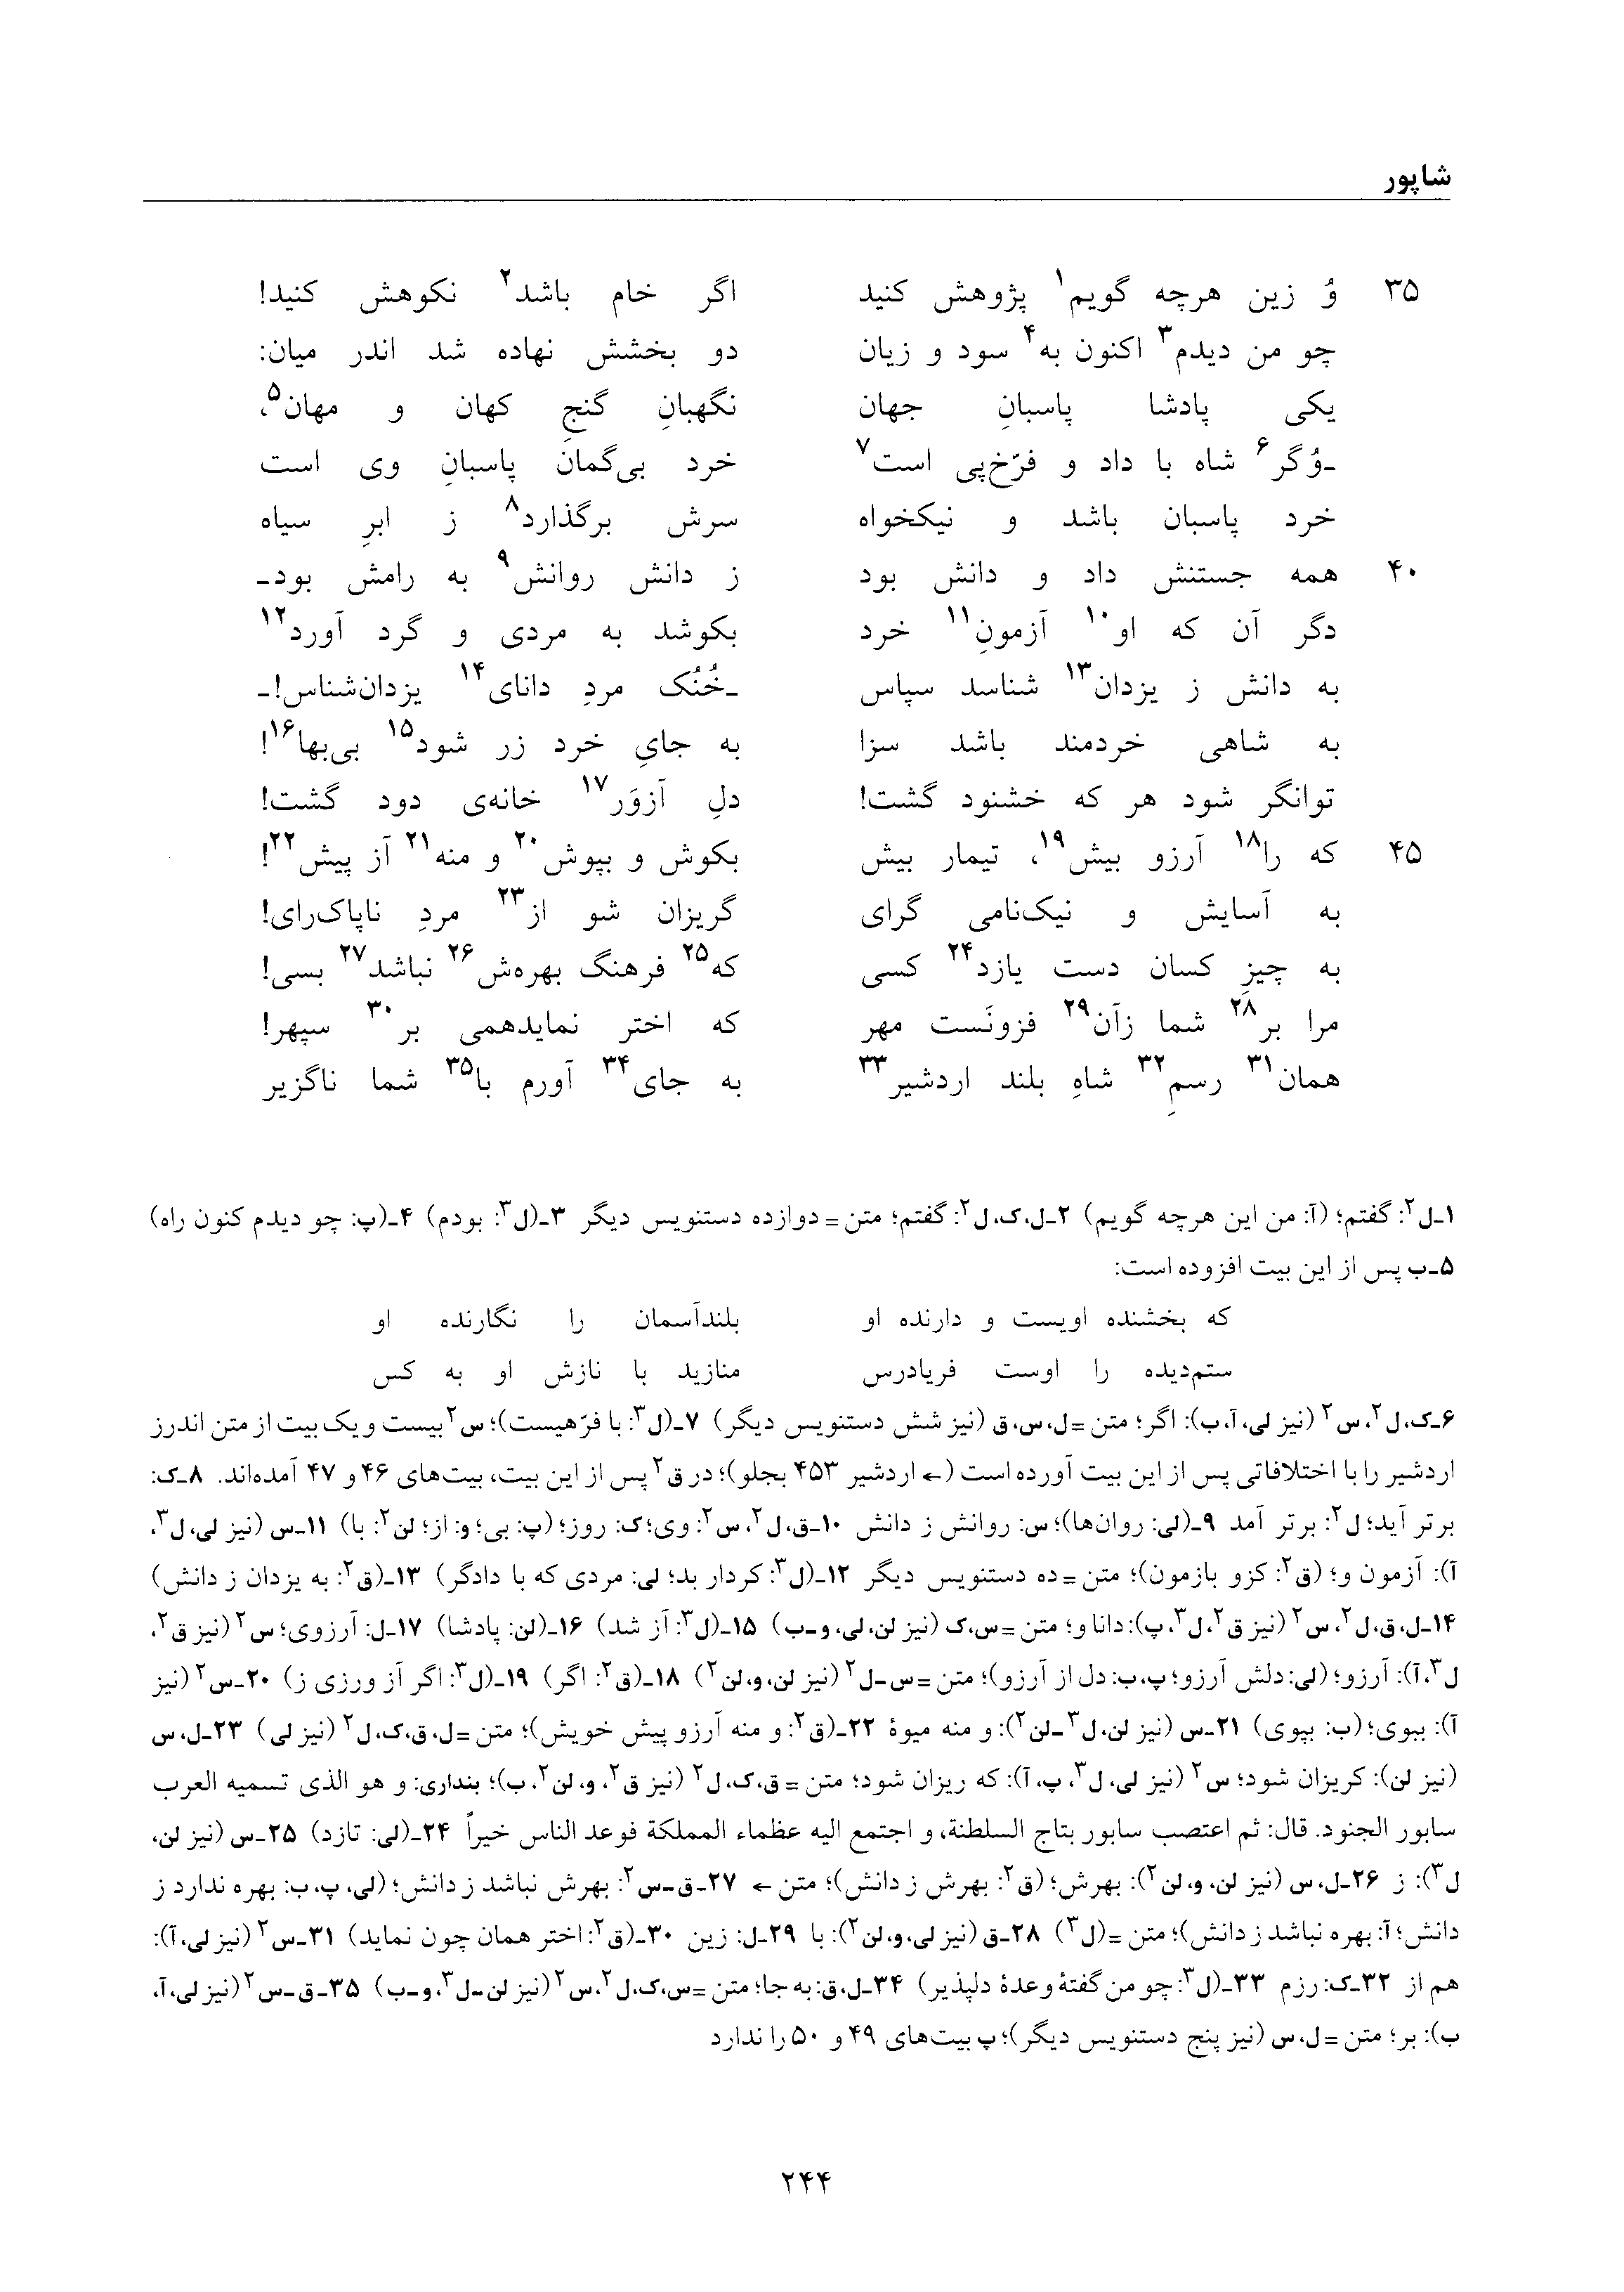 vol. 6, p. 244